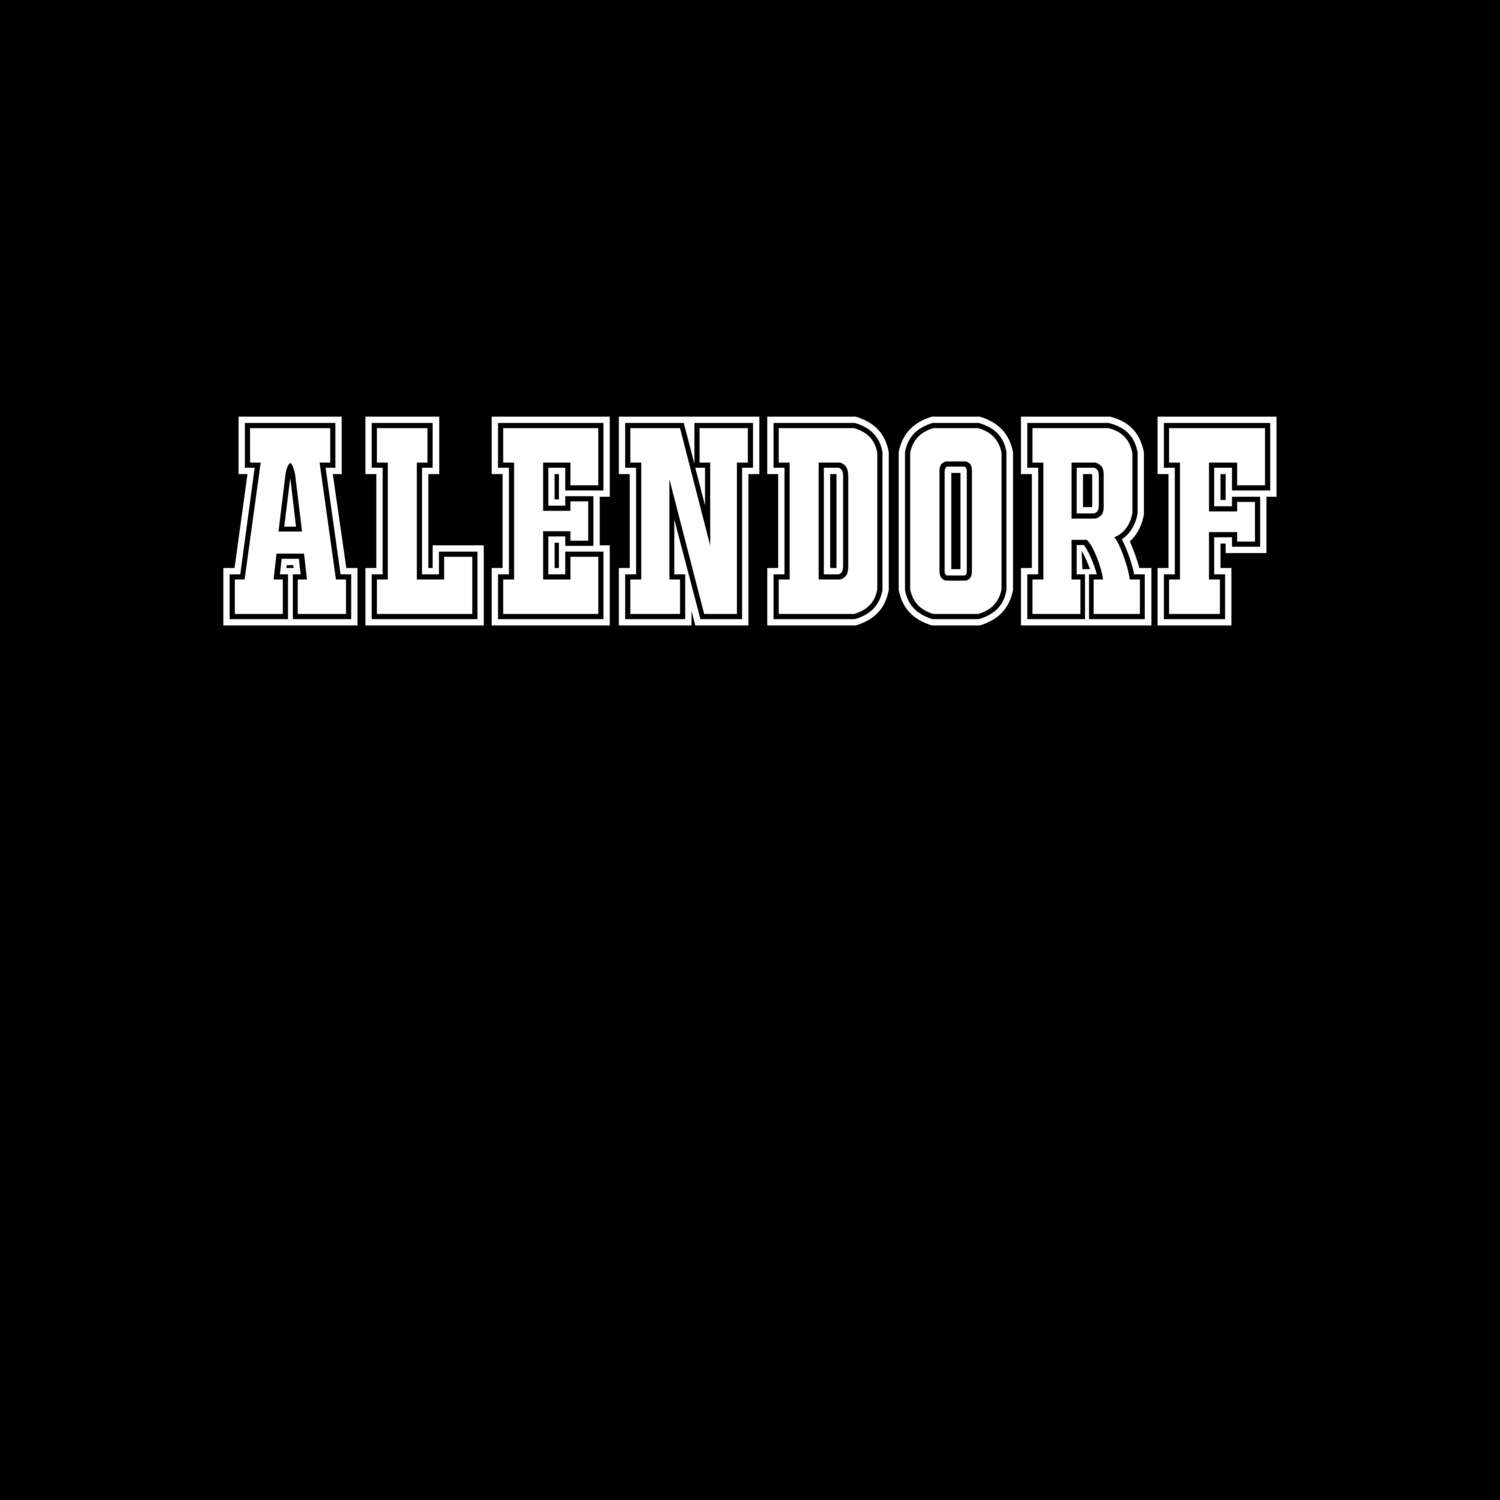 Alendorf T-Shirt »Classic«